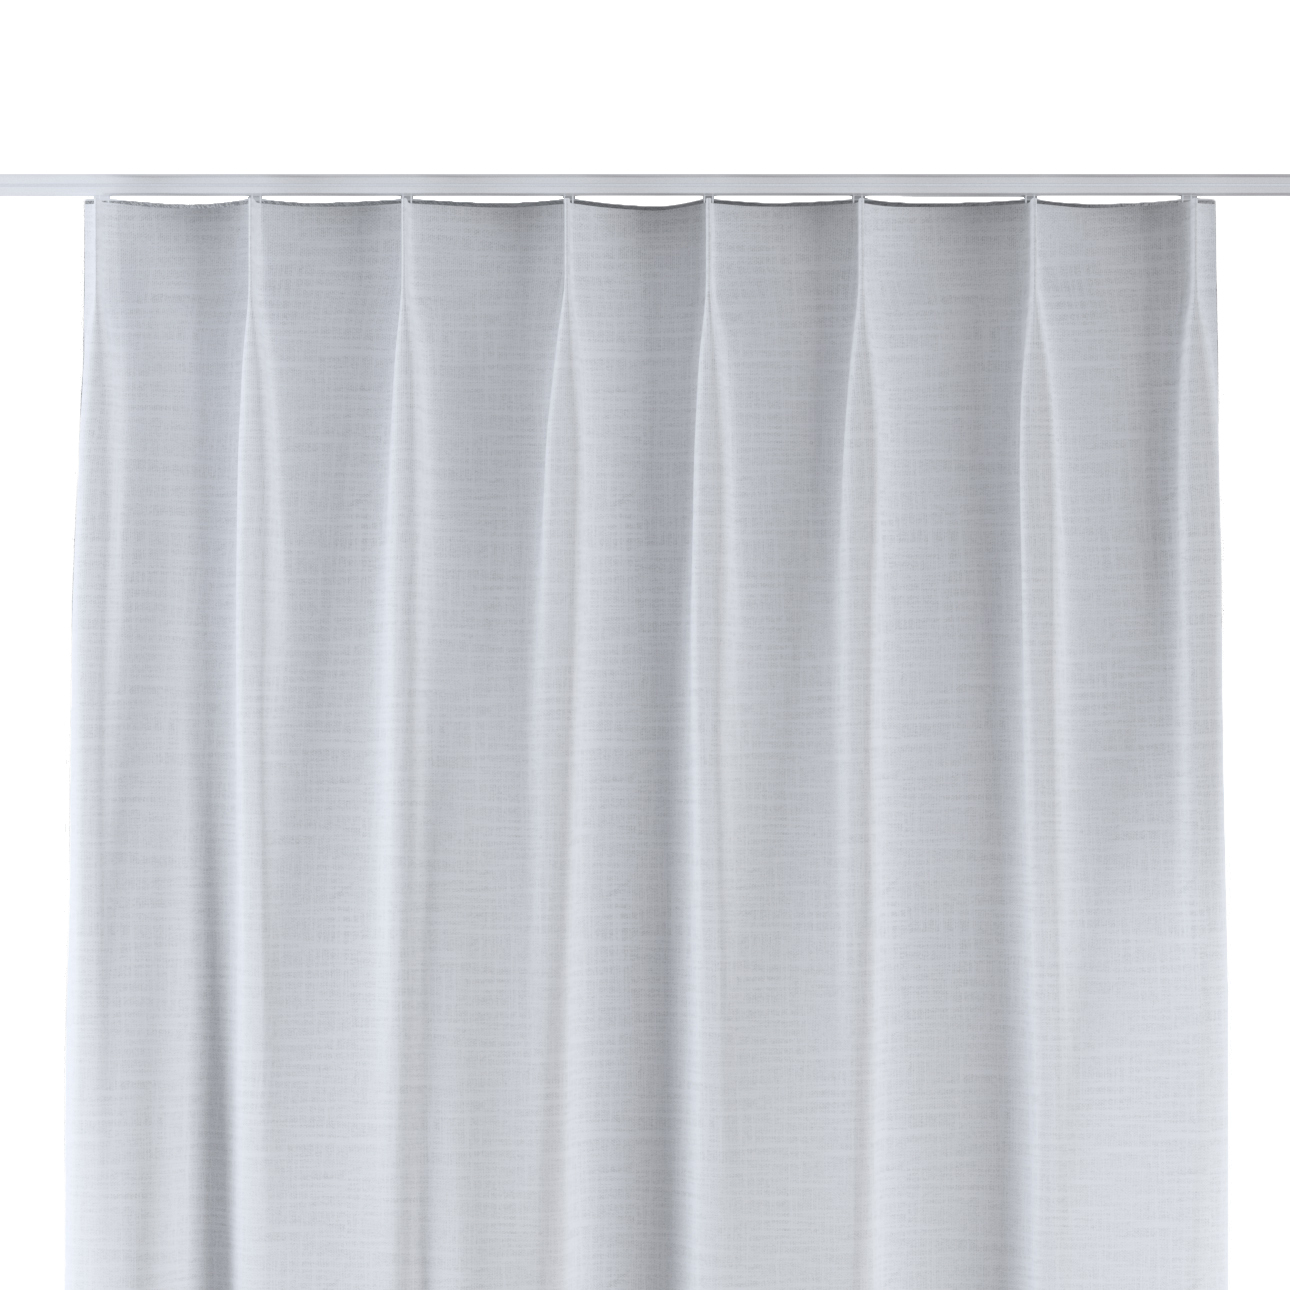 Vorhang mit flämischen 1-er Falten, weiß, Harmony (144-75) günstig online kaufen